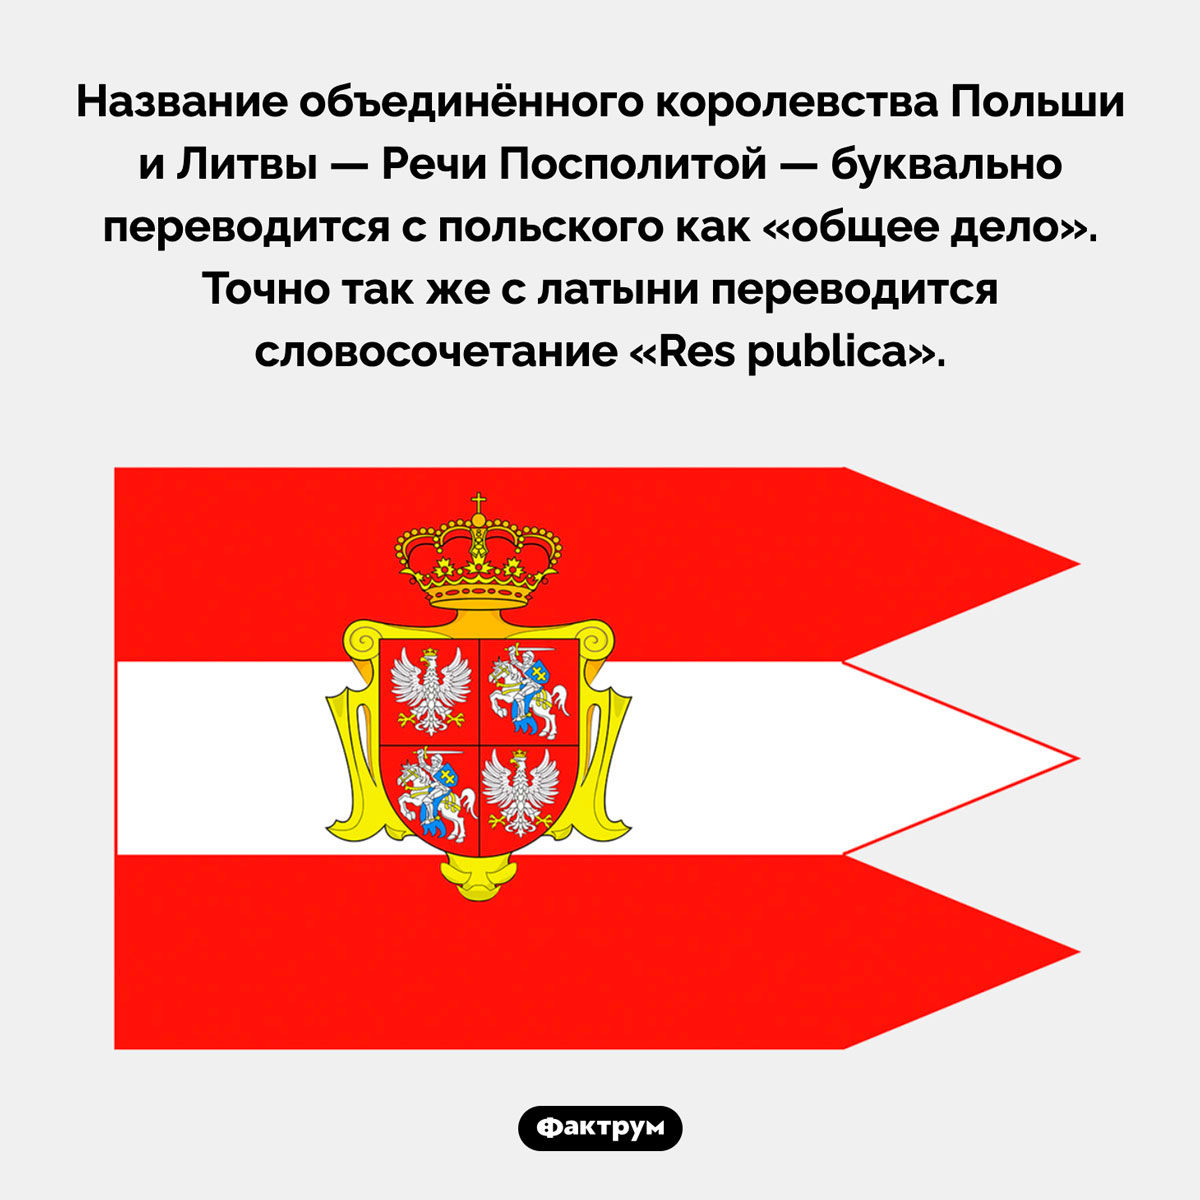 Королевство «Республика». Название объединённого королевства Польши и Литвы — Речи Посполитой — буквально переводится с польского как «общее дело». Точно так же с латыни переводится словосочетание «Res publica».